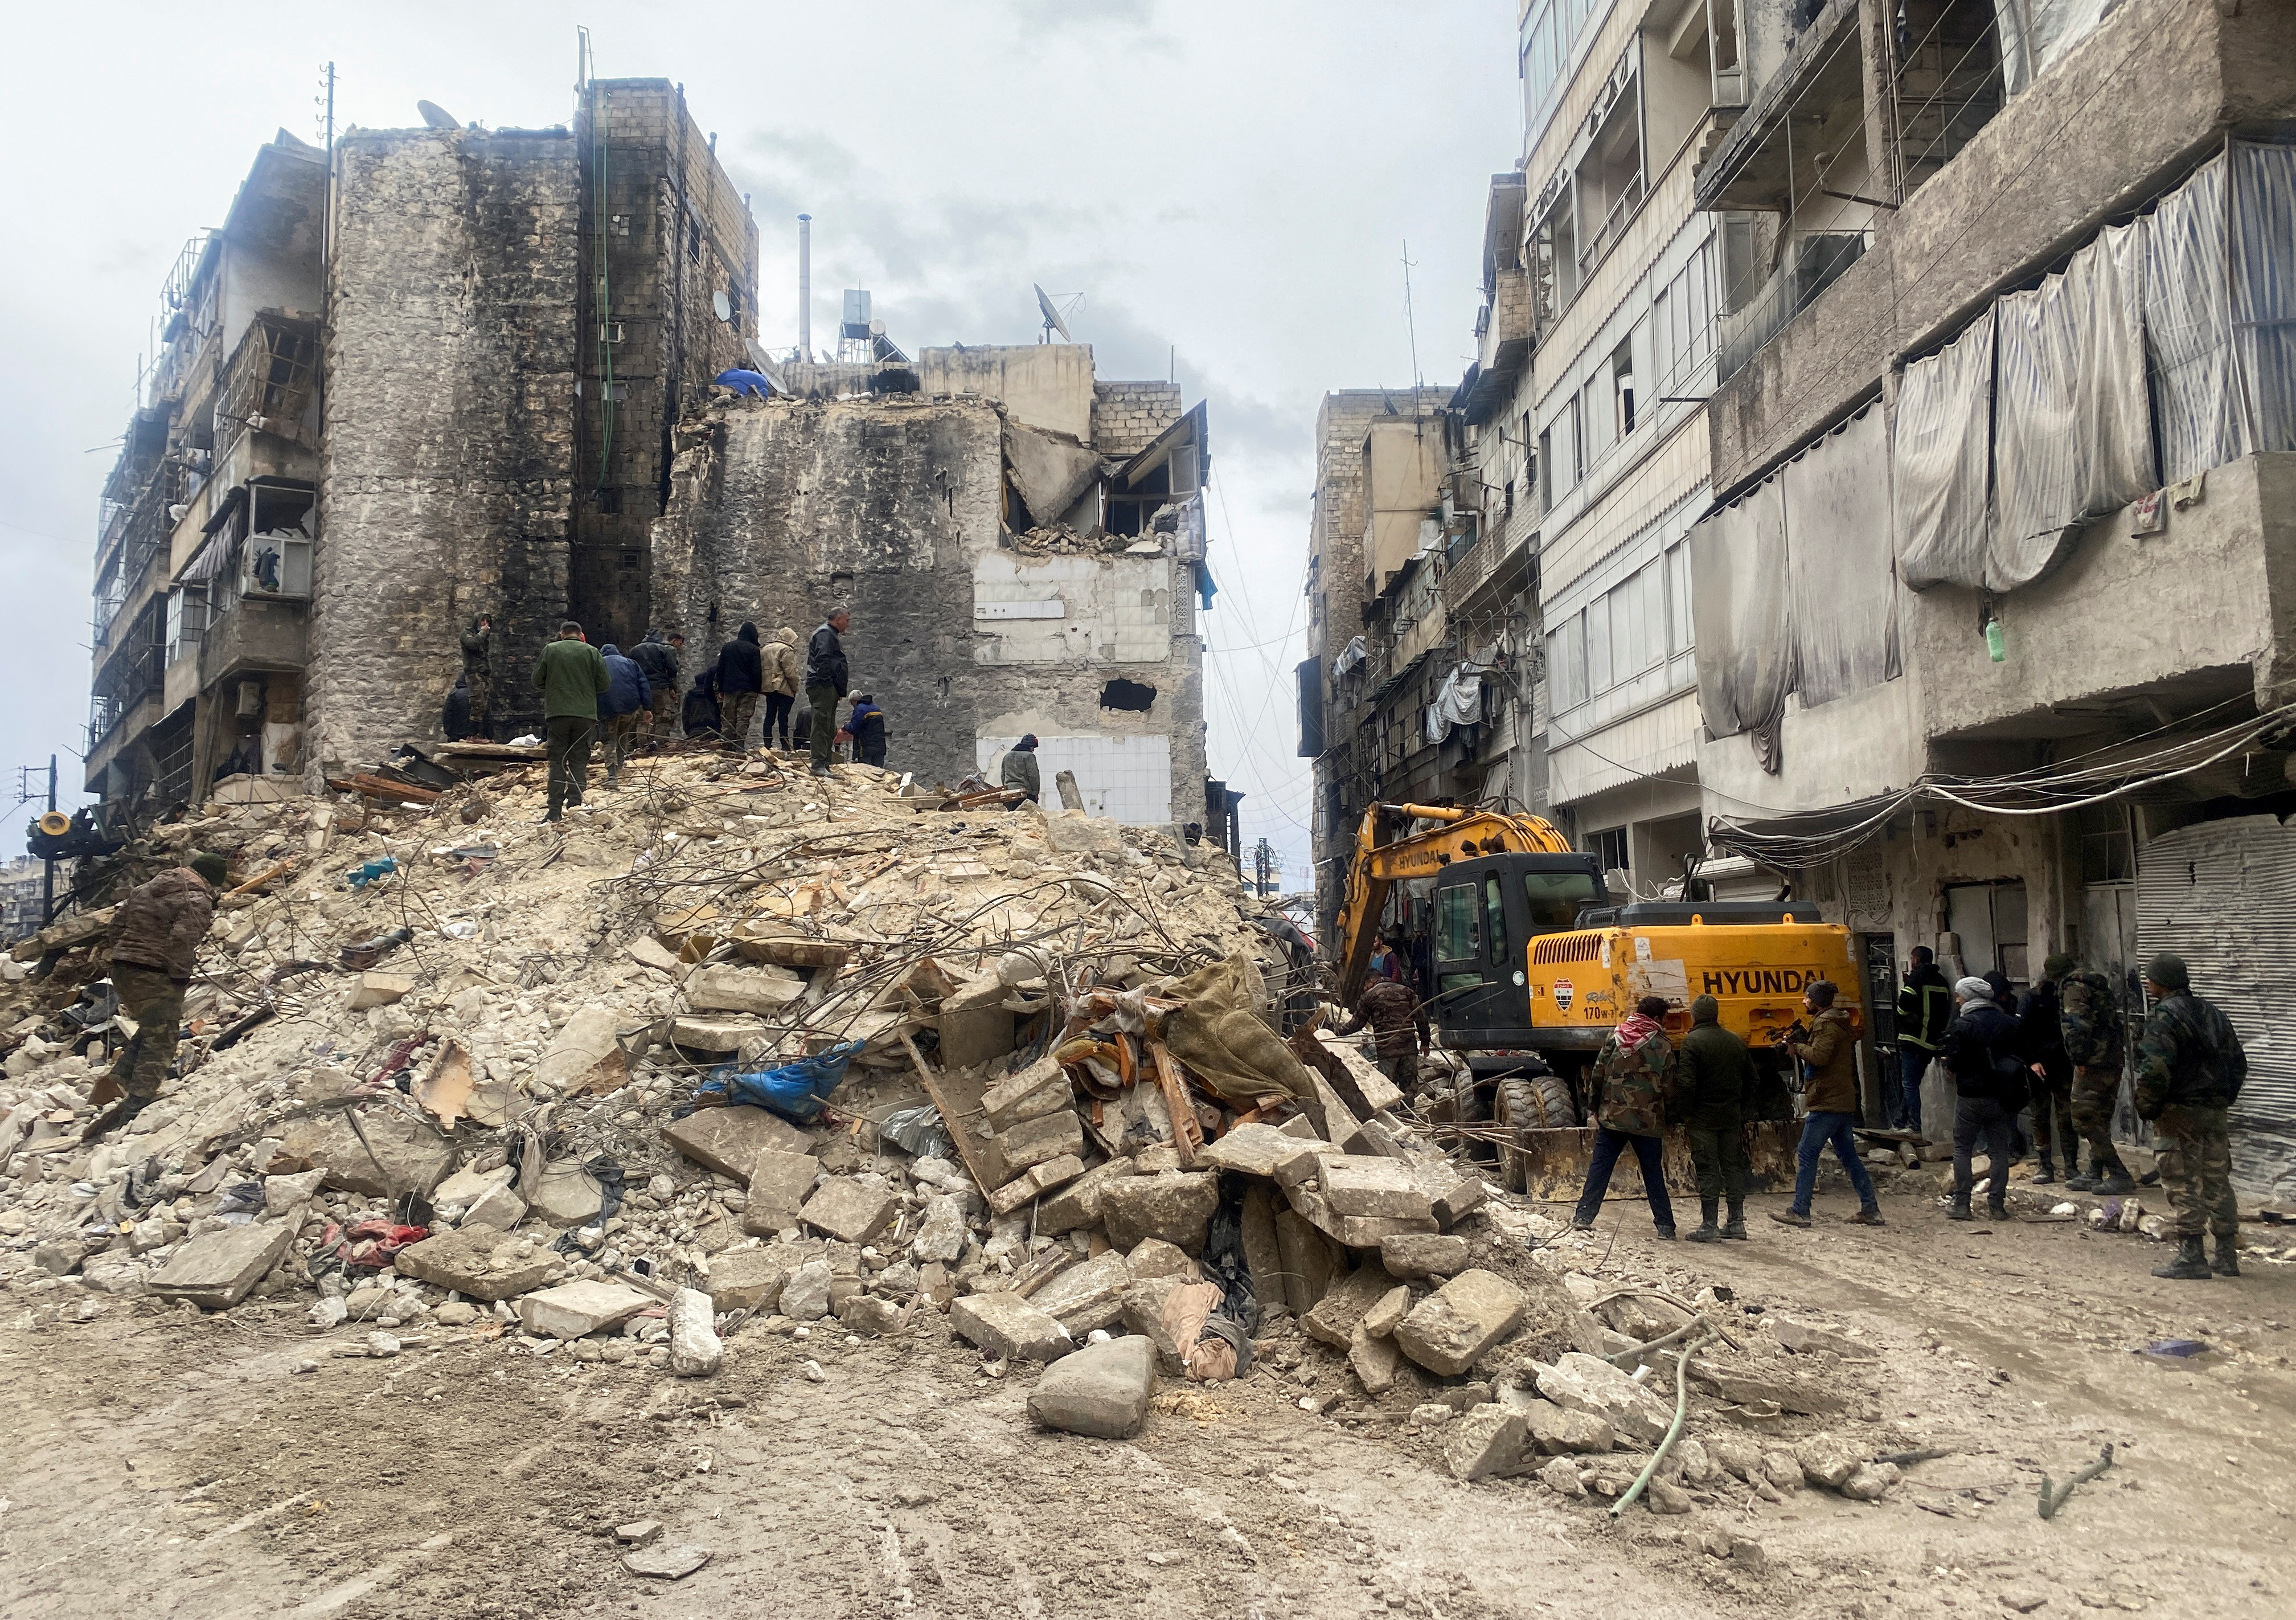 La gente busca sobrevivientes bajo los escombros, luego de un terremoto, en Alepo, Siria. REUTERS/Firas Makdesi
